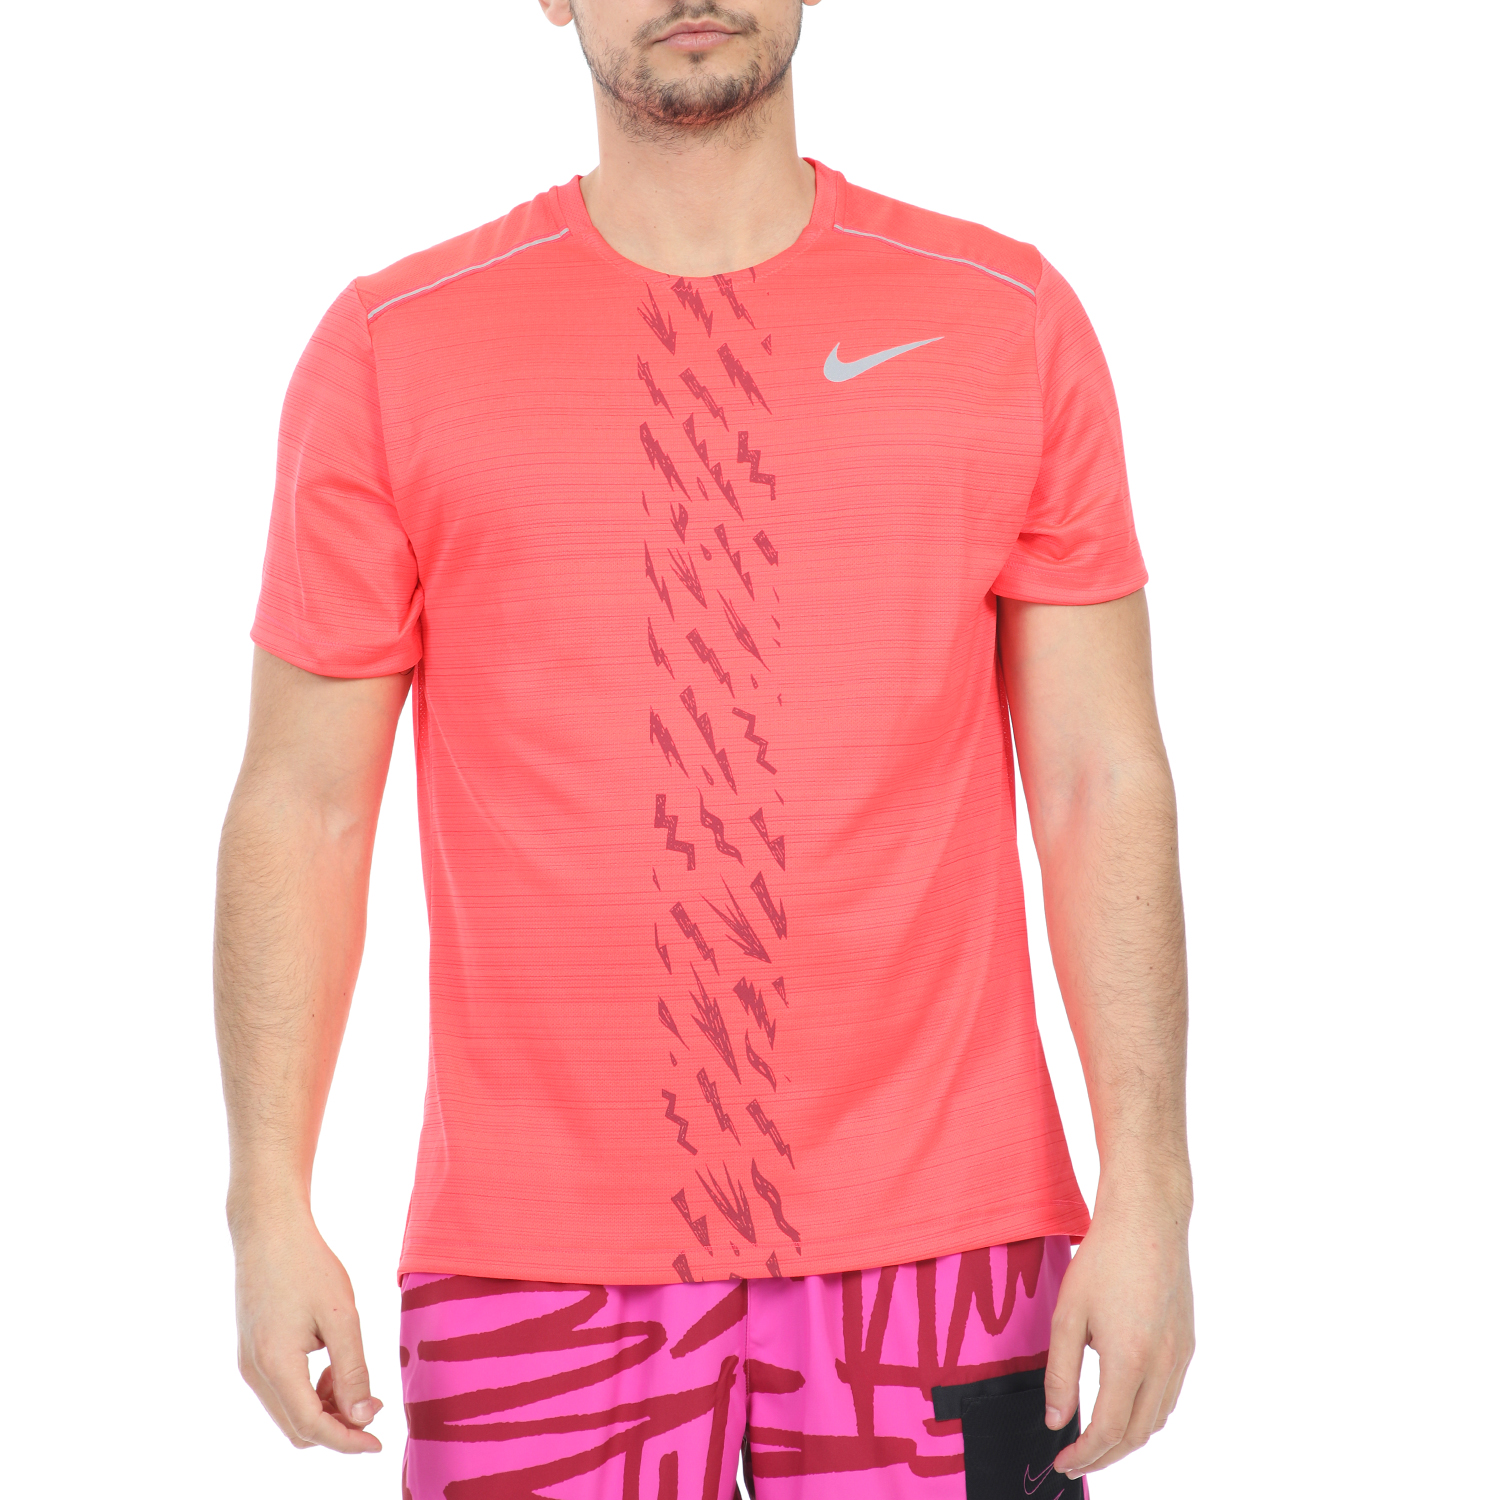 Ανδρικά/Ρούχα/Αθλητικά/T-shirt NIKE - Ανδρική μπλούζα NIKE DRY MILER SS EDGE GX PO κόκκινη